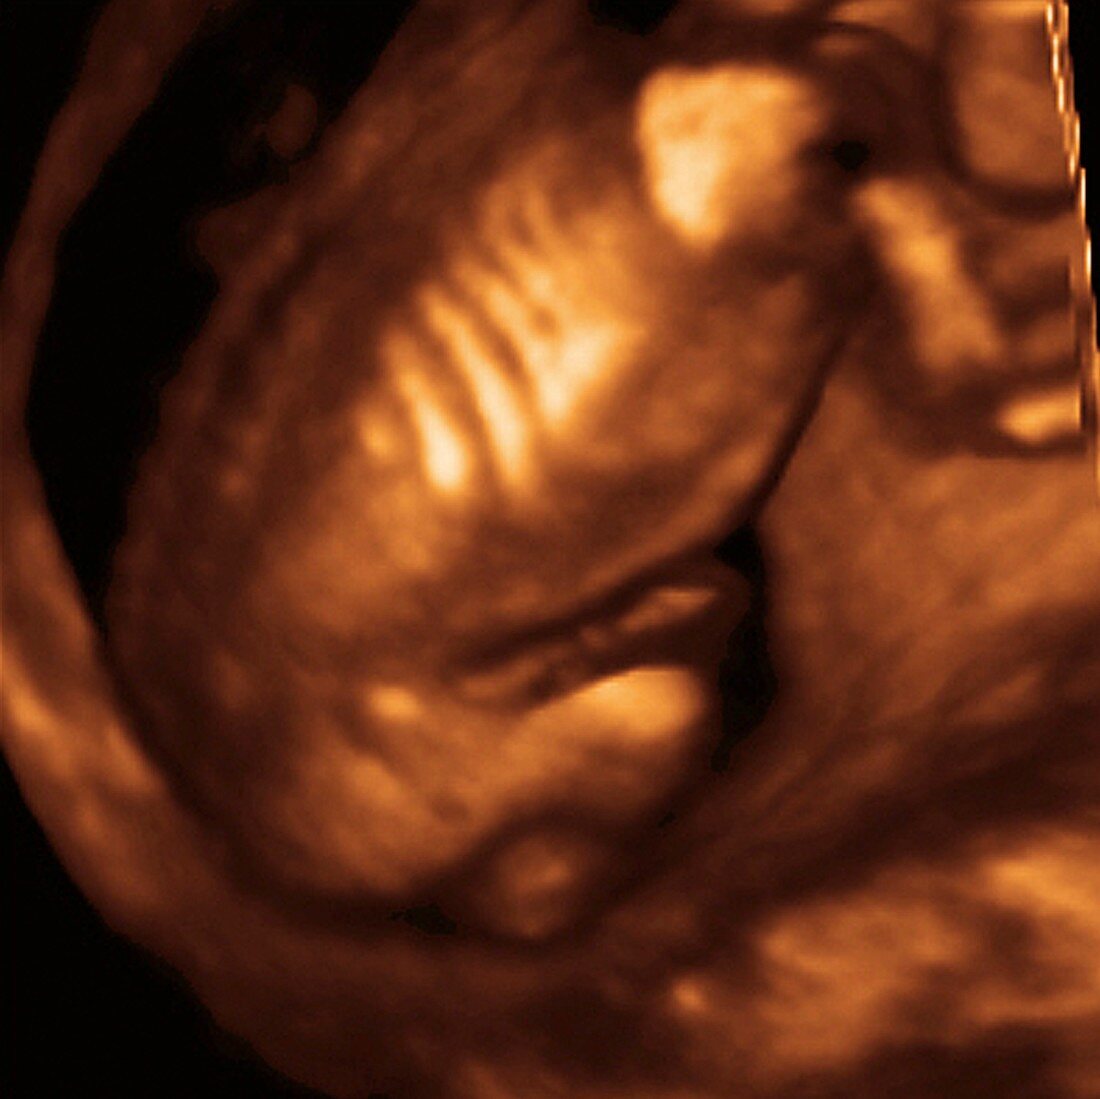 Foetus' back,3-D ultrasound scan